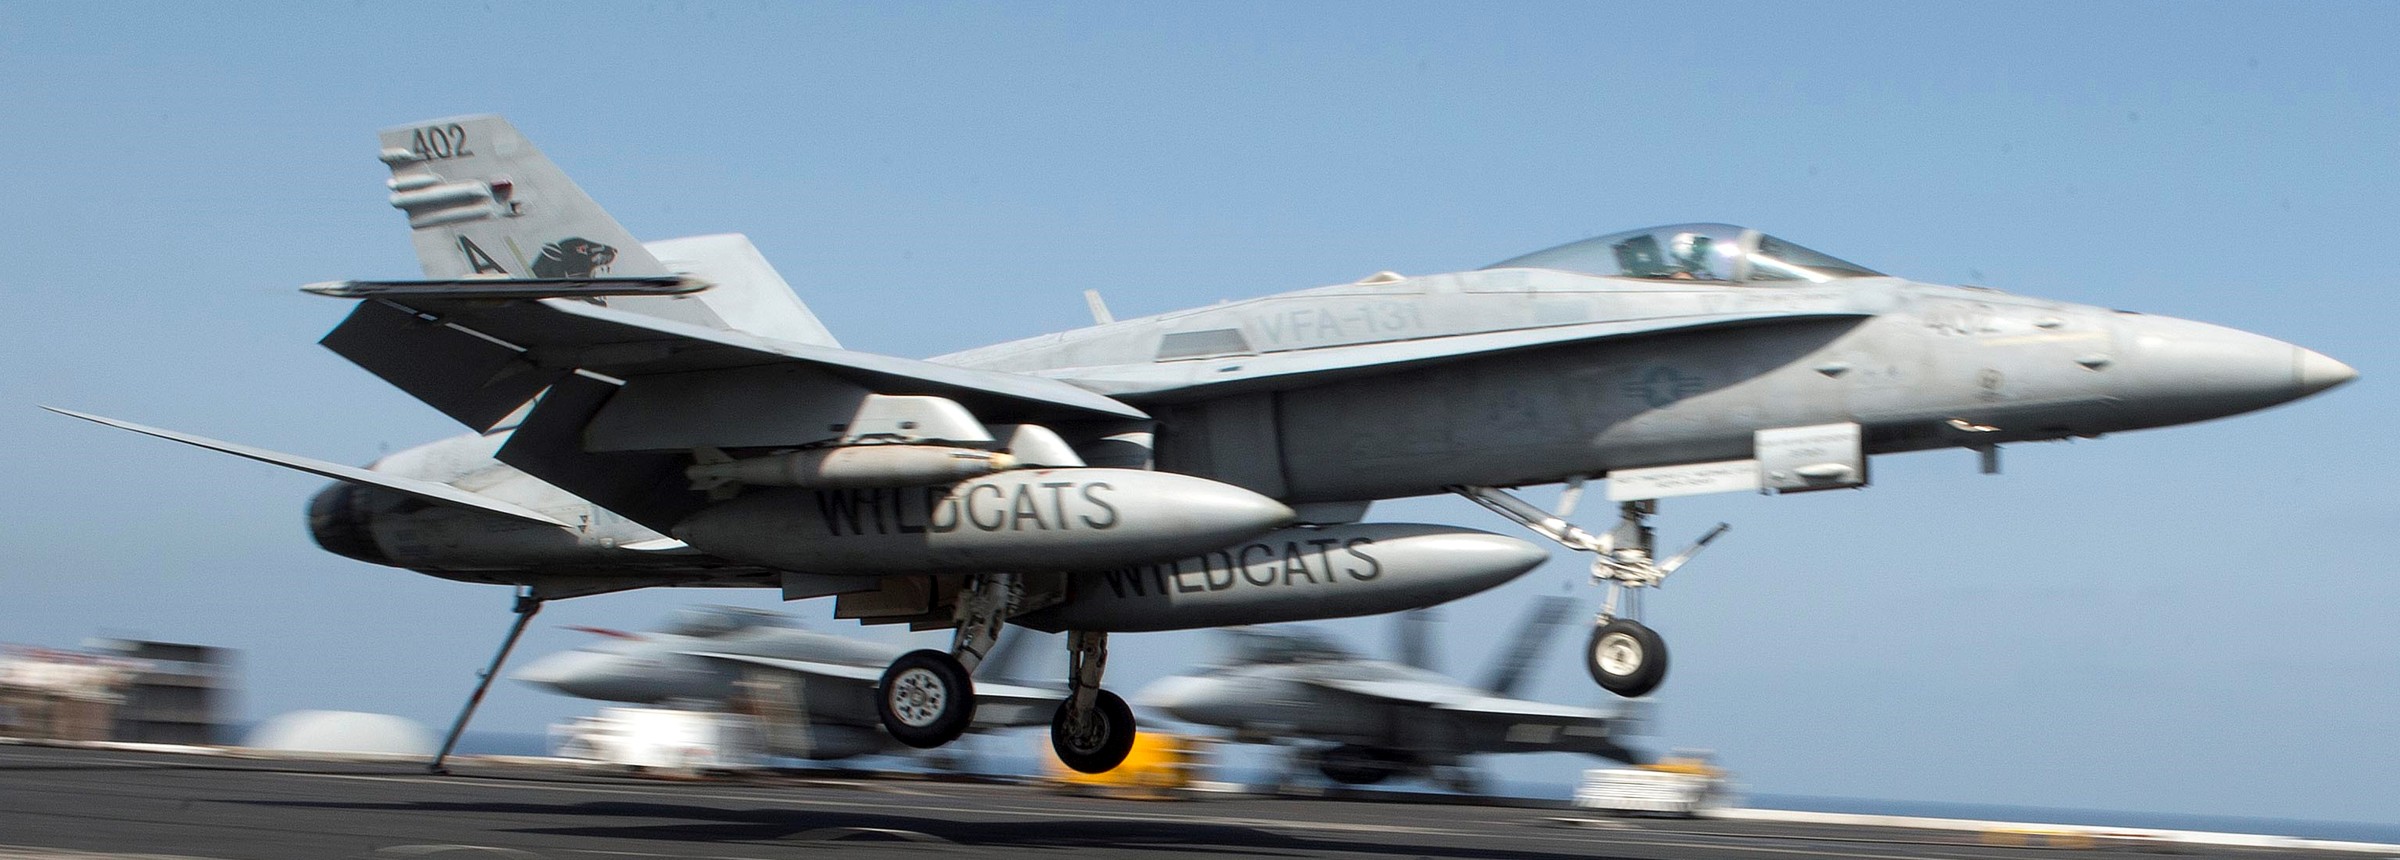 vfa-131 wildcats strike fighter squadron f/a-18c hornet cvw-7 uss dwight d. eisenhower cvn-69 2013 51